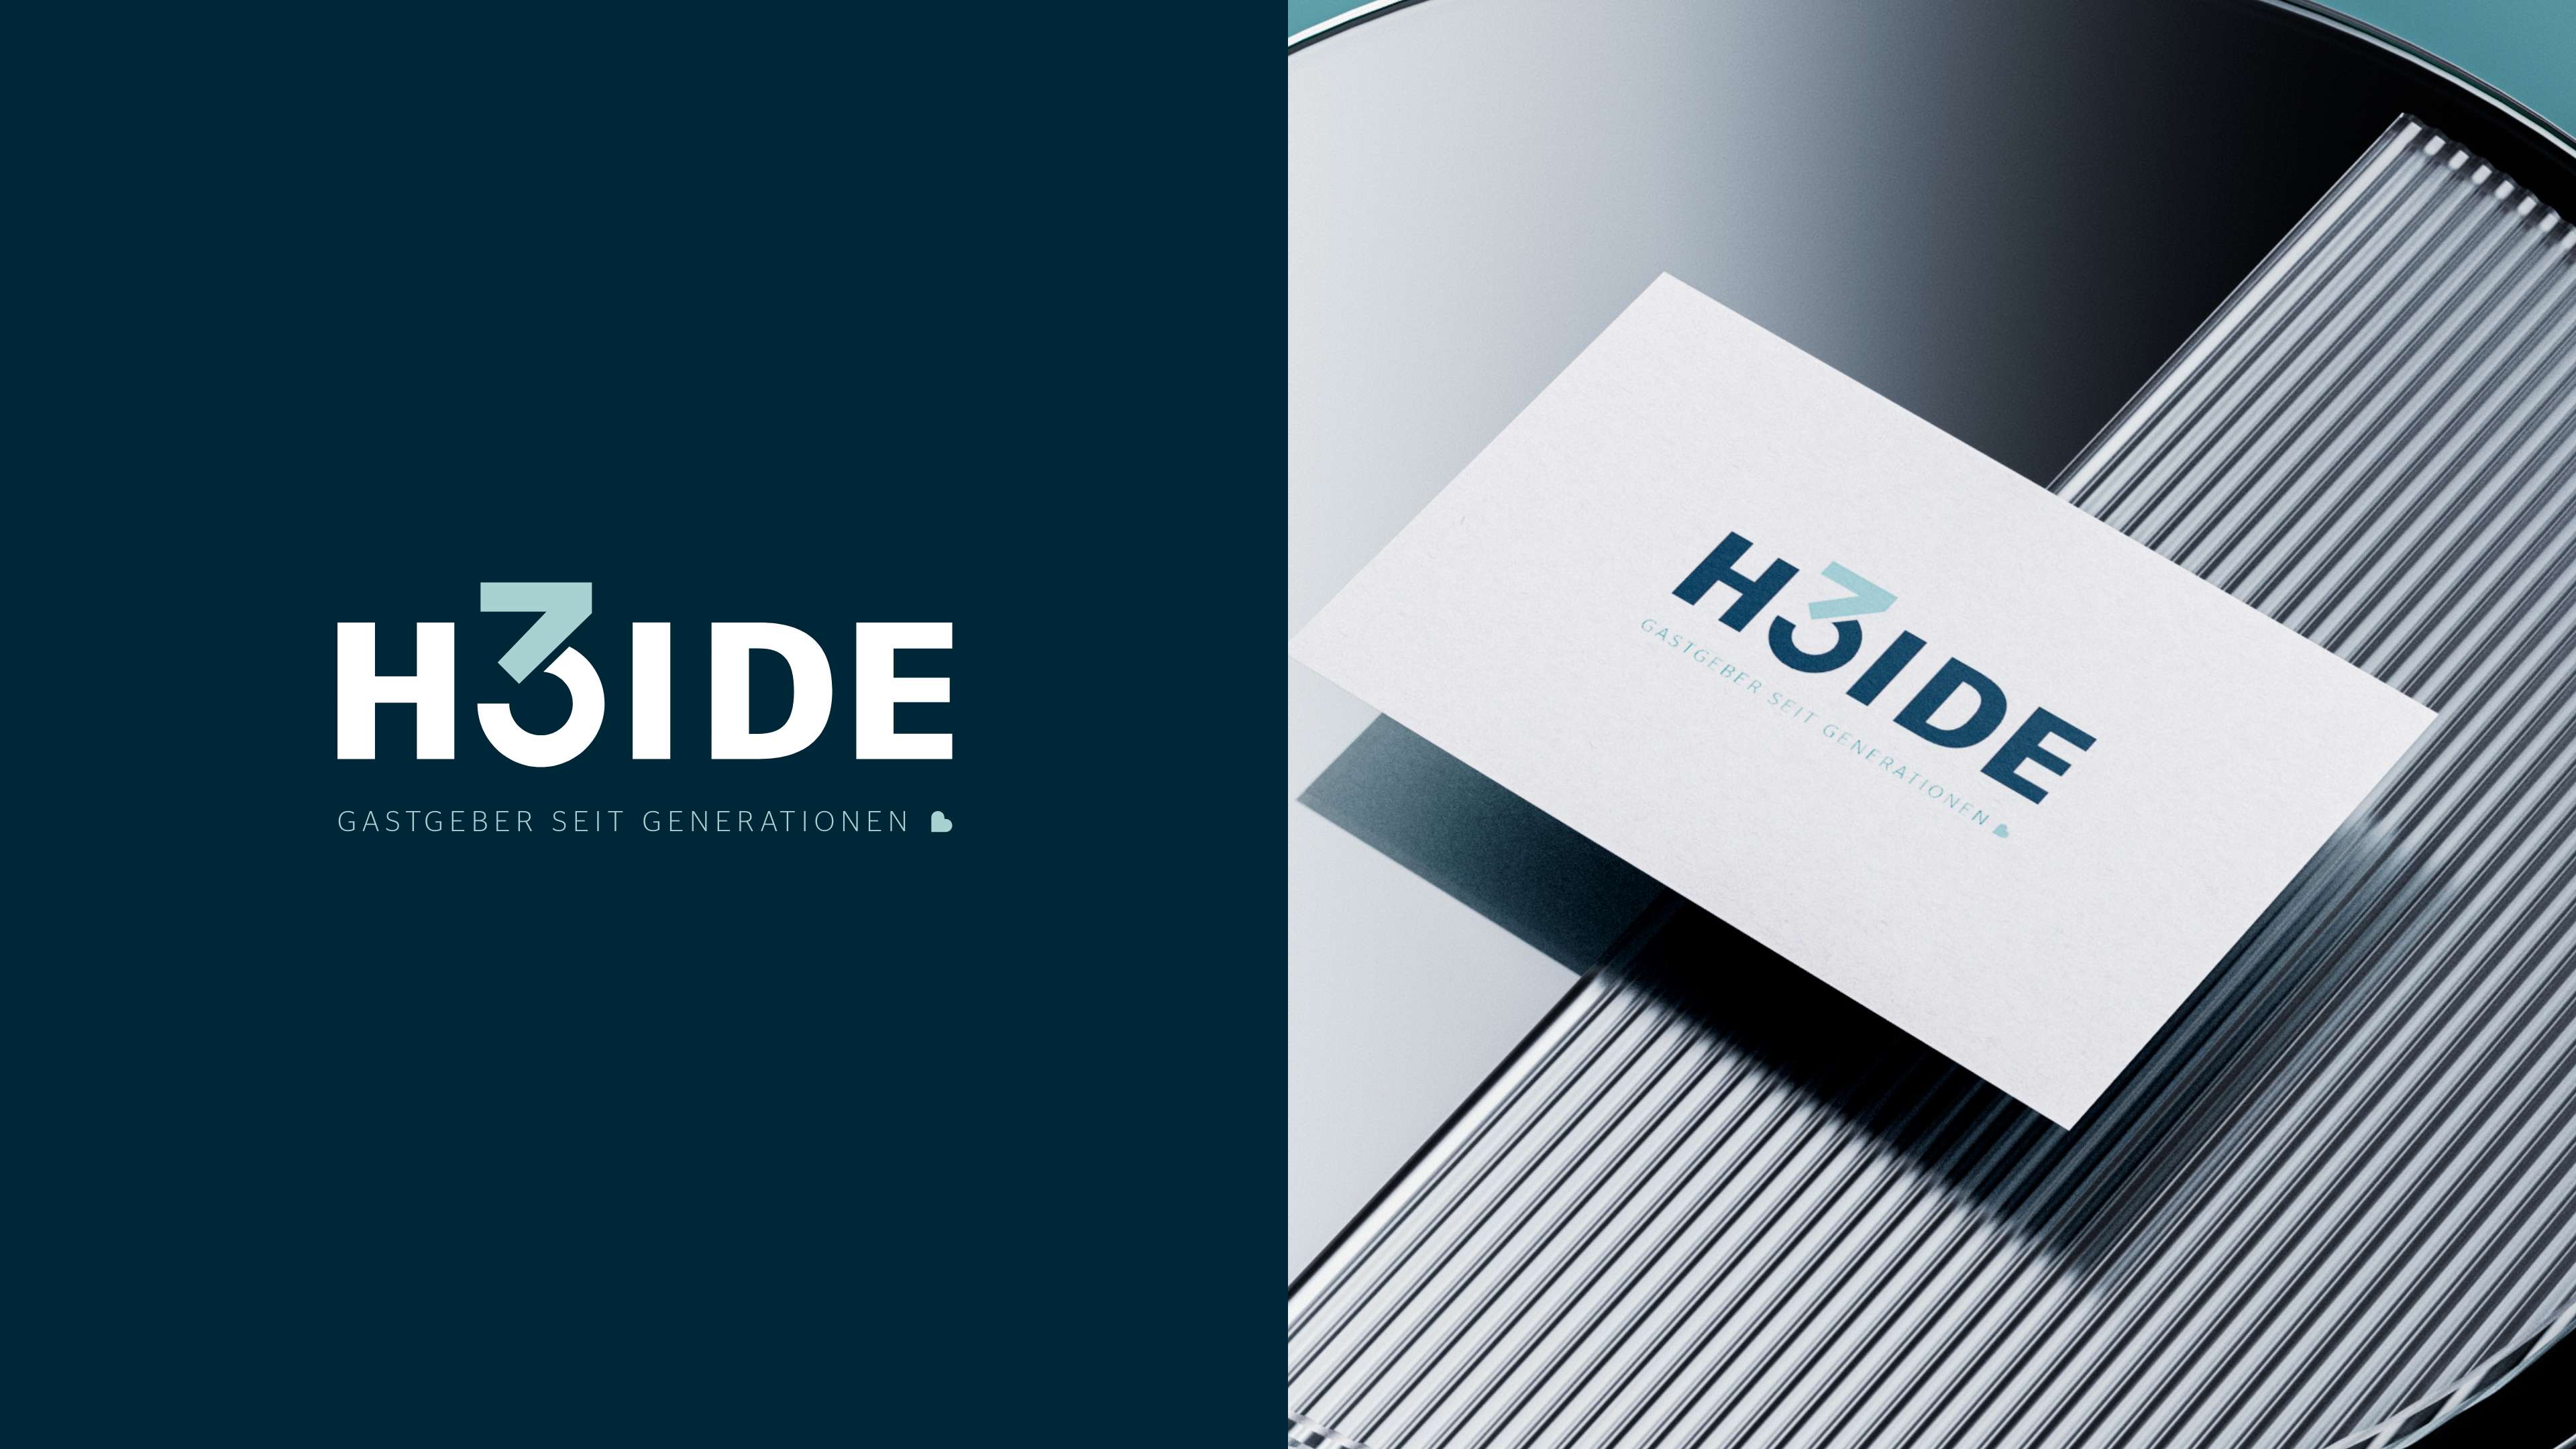 Headgrafik: Neues Logo "H3IDE – Gastgeber seit Generationen" links und die neue Visitenkarte rechts.